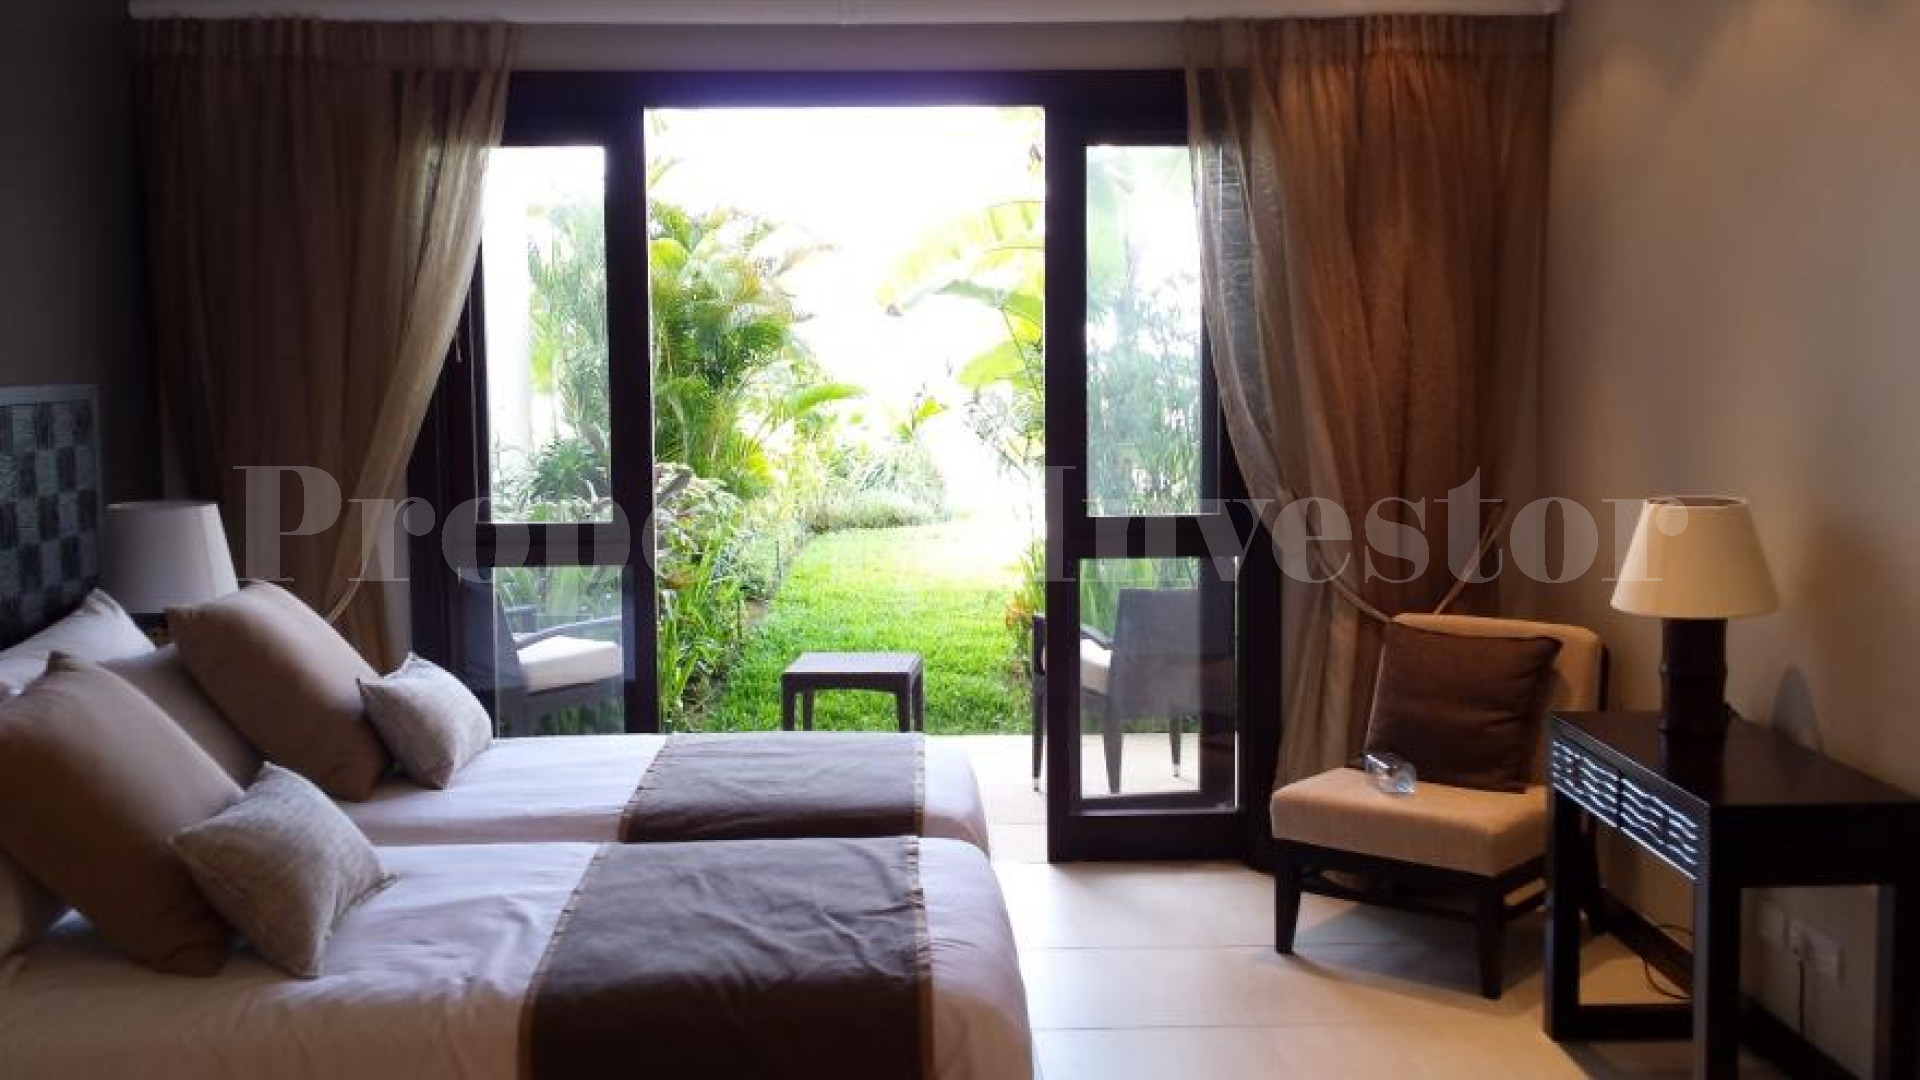 Продаётся дом с 4 спальнями в отличном месте с изумительным панорамным видом на Сейшелах